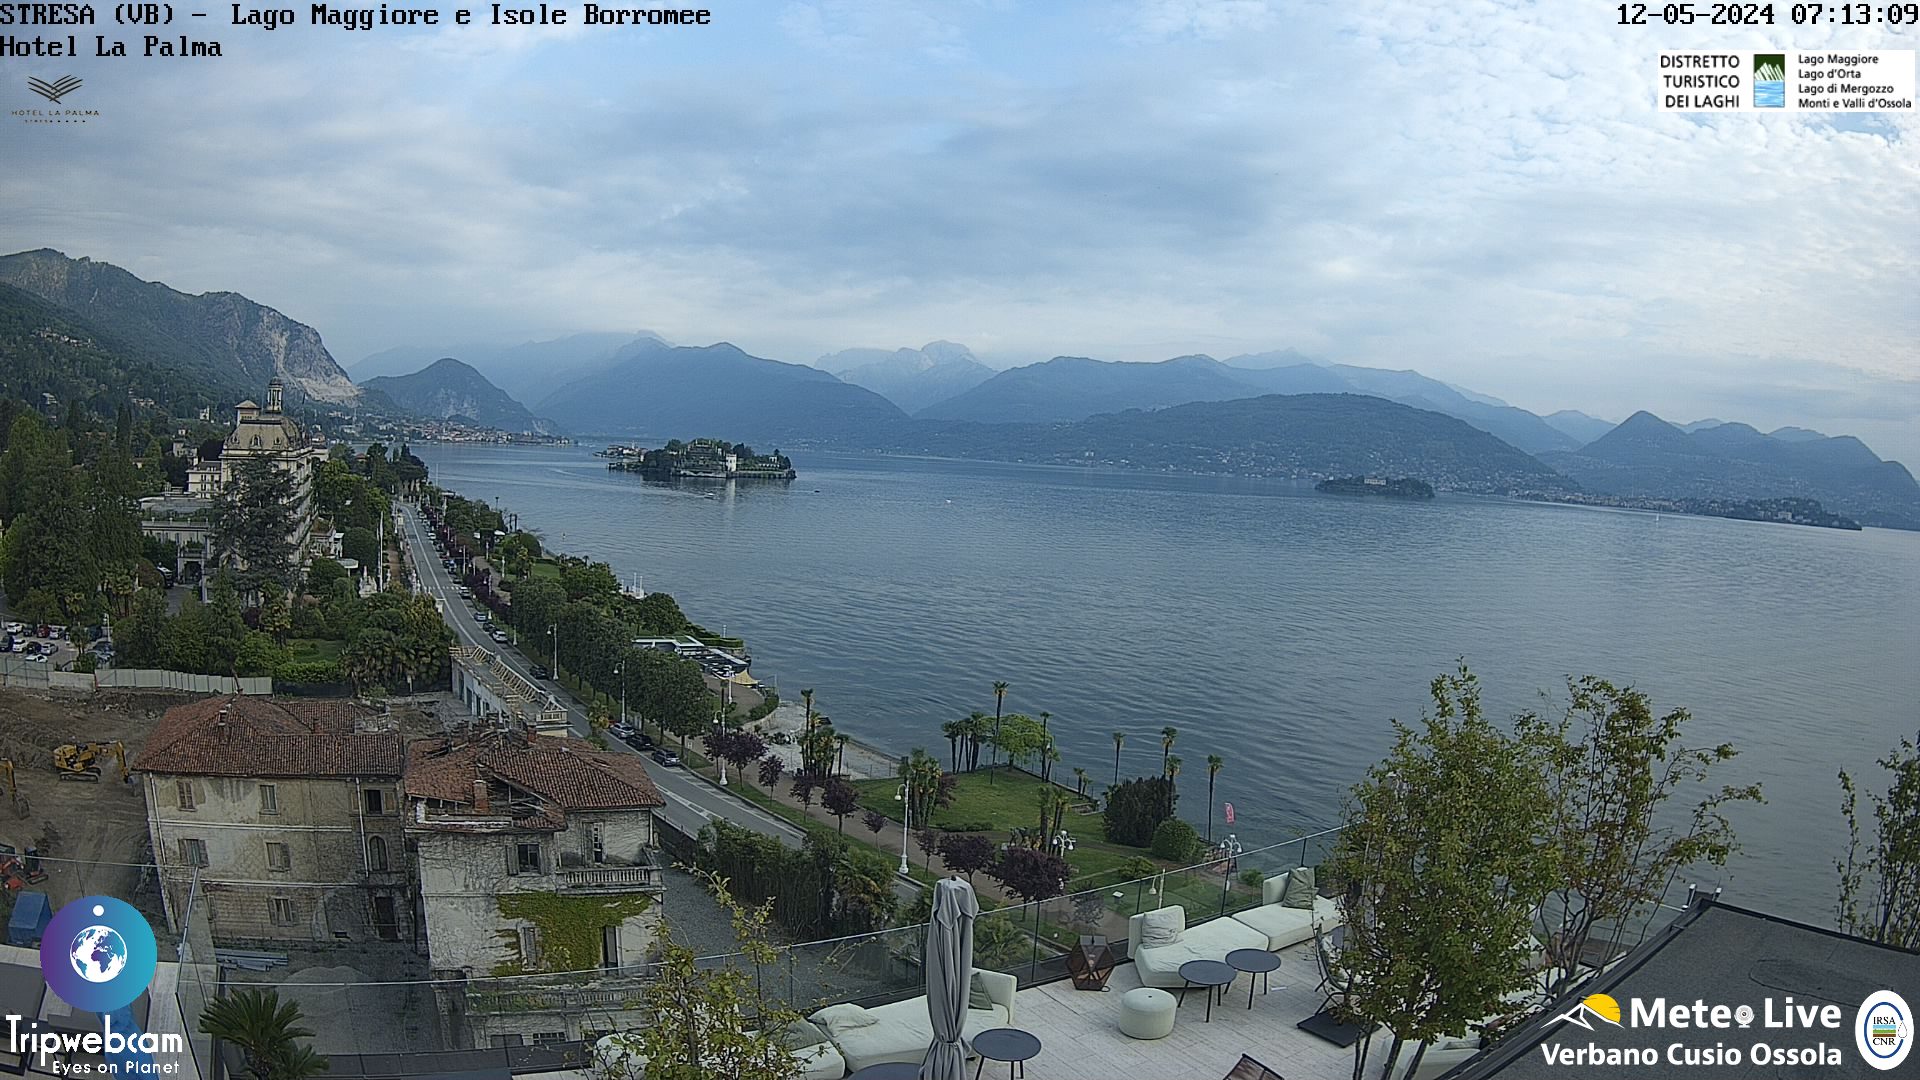 Stresa (Lago Maggiore) Di. 08:18